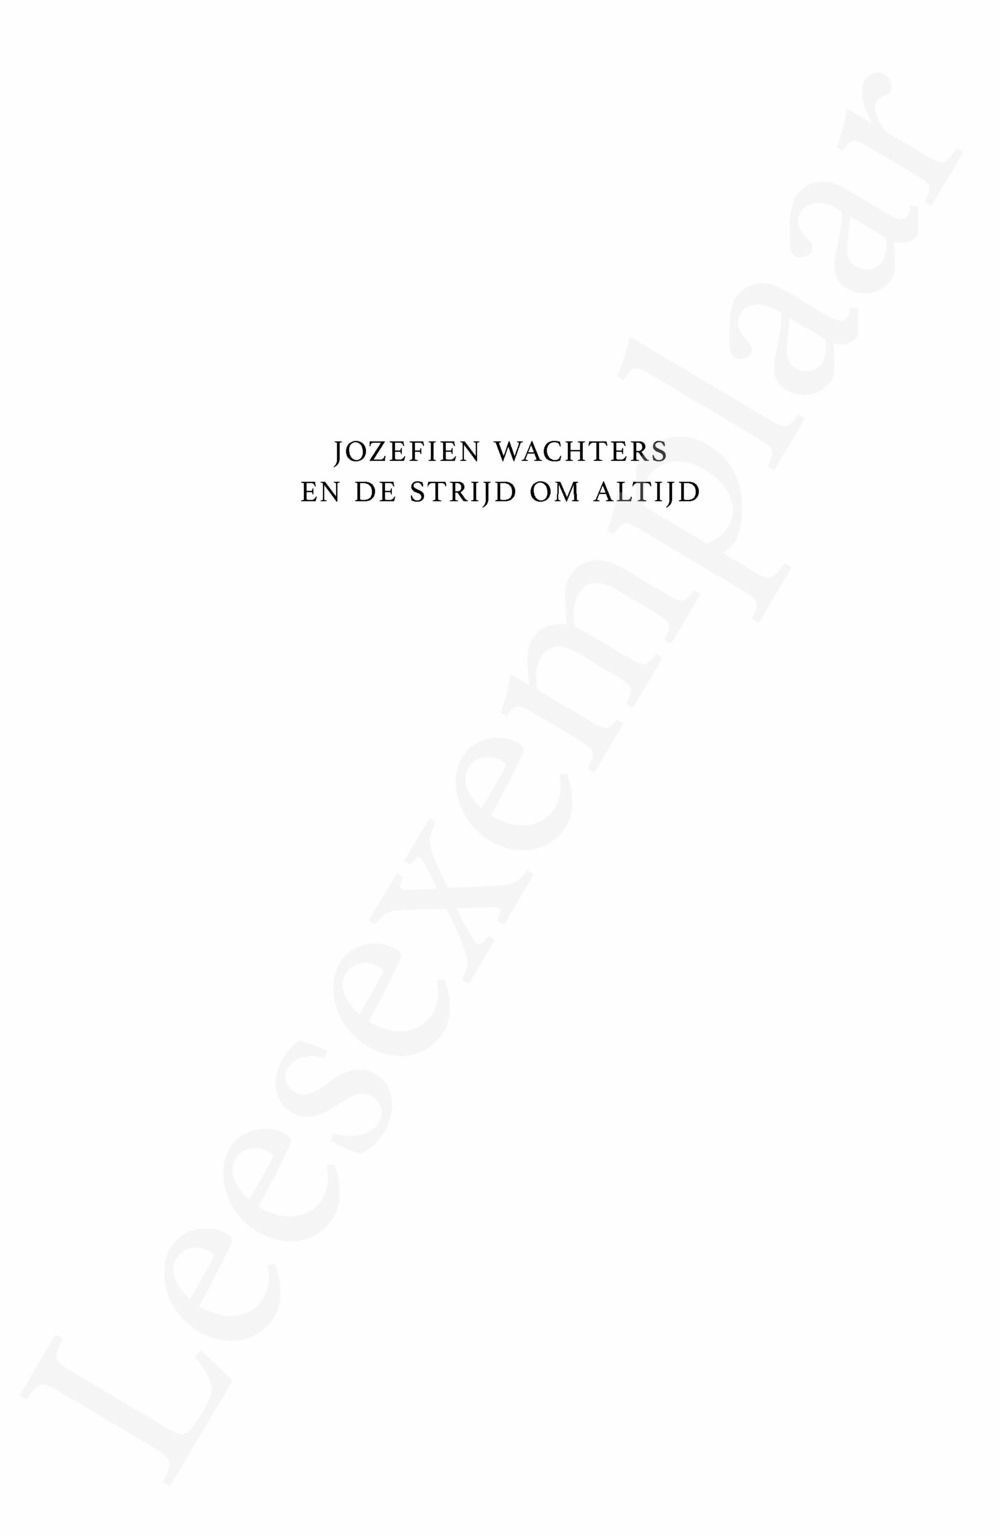 Preview: Jozefien Wachters en de strijd om altijd